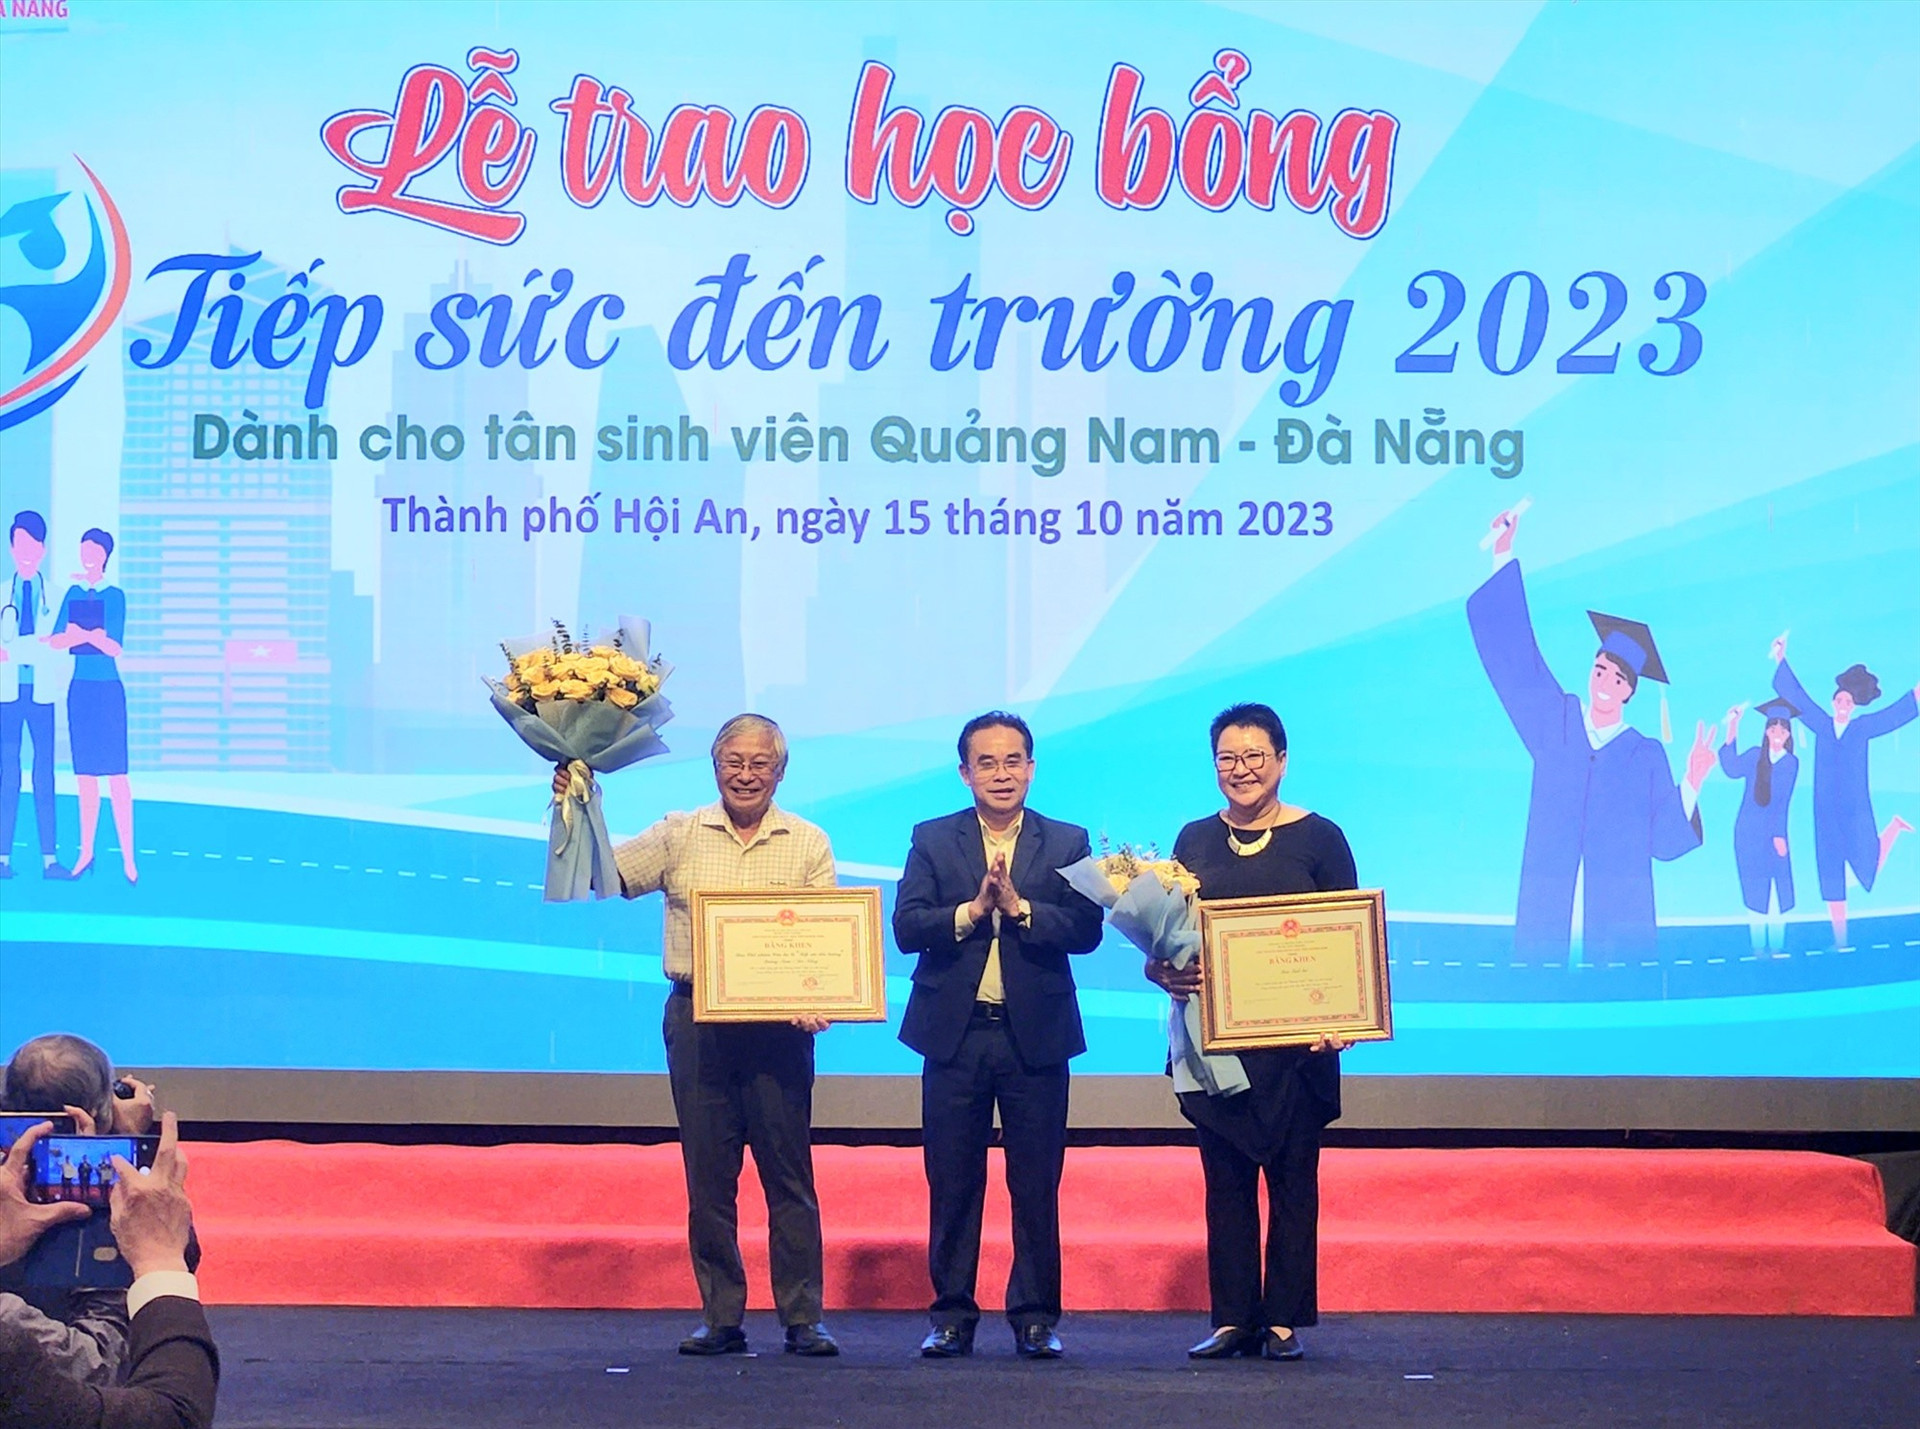 Lãnh đạo tỉnh trao bằng khen của Chủ tịch UBND tỉnh cho đại diện Báo Tuổi trẻ và Câu lạc bộ tiếp sức đến trường Quảng Nam - Đà Nẵng. Ảnh: Q.T